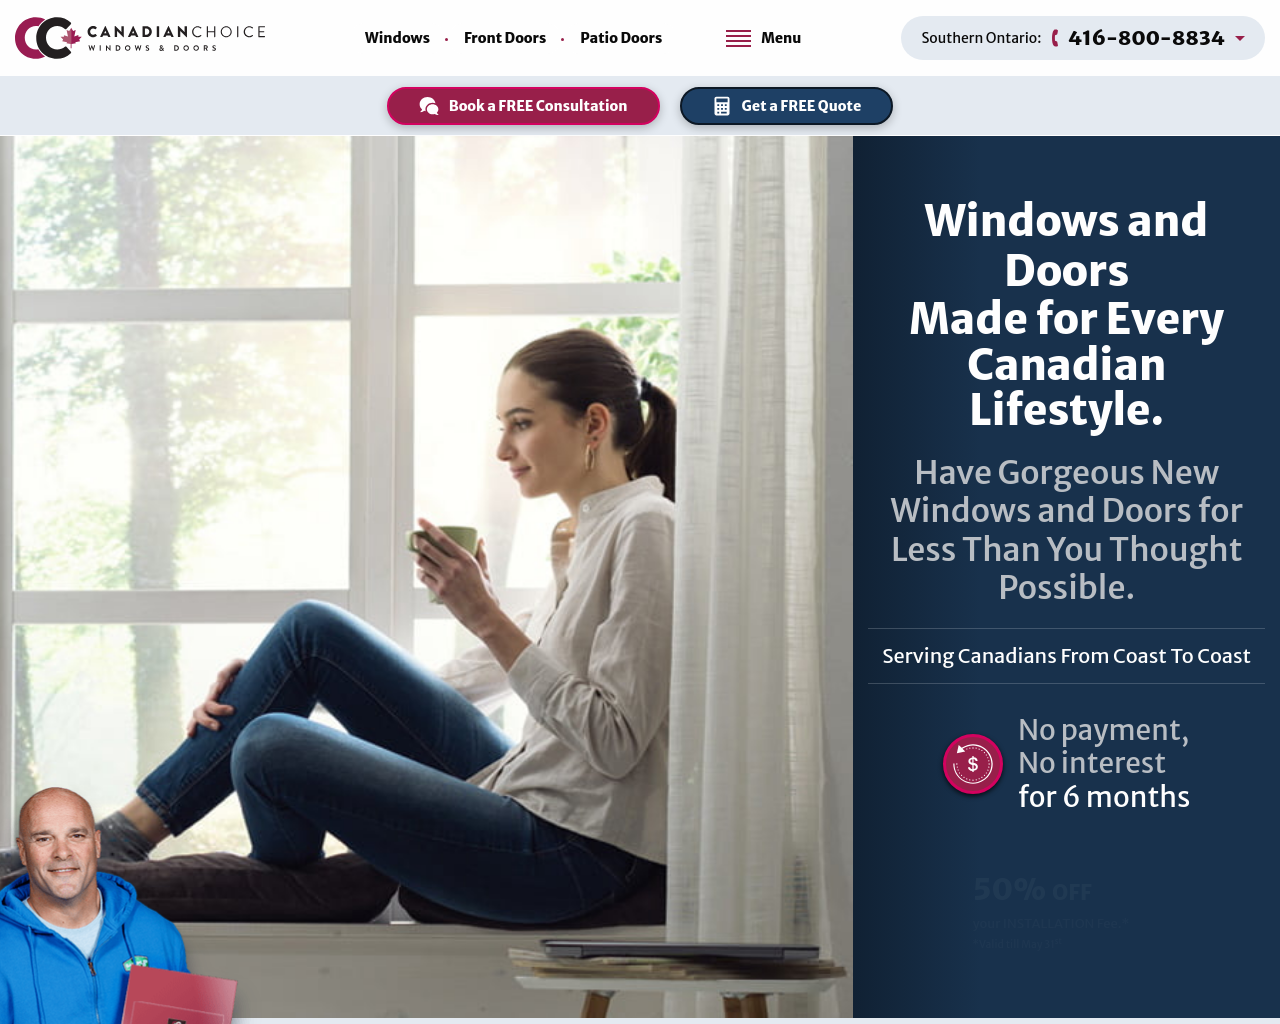 windowscanada.com